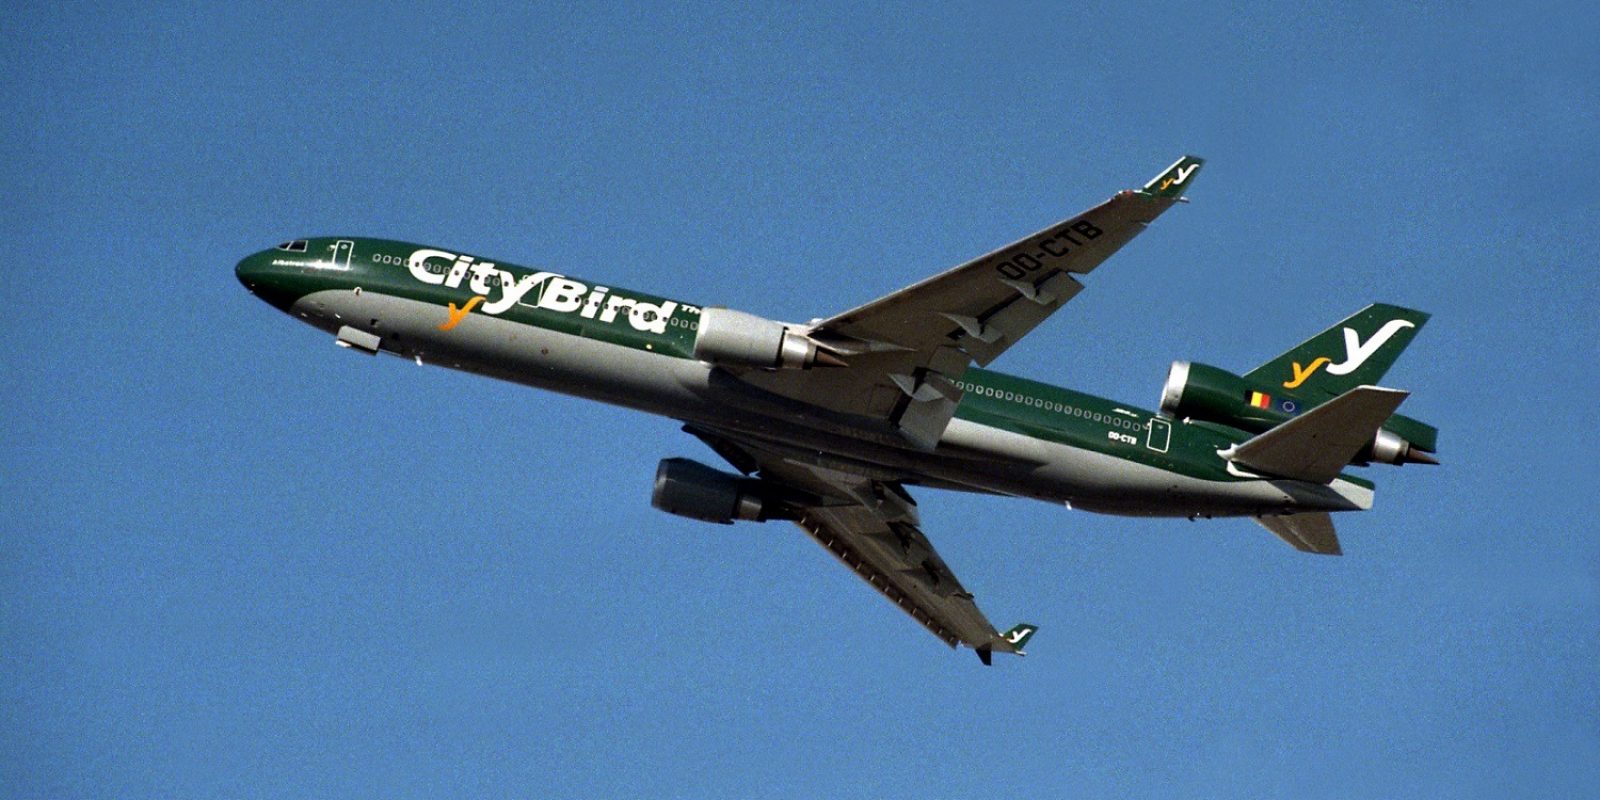 décollage à l’été 1998 du premier MD-11 (OO-CTB msn 48796) aux couleurs vertes de City Bird.